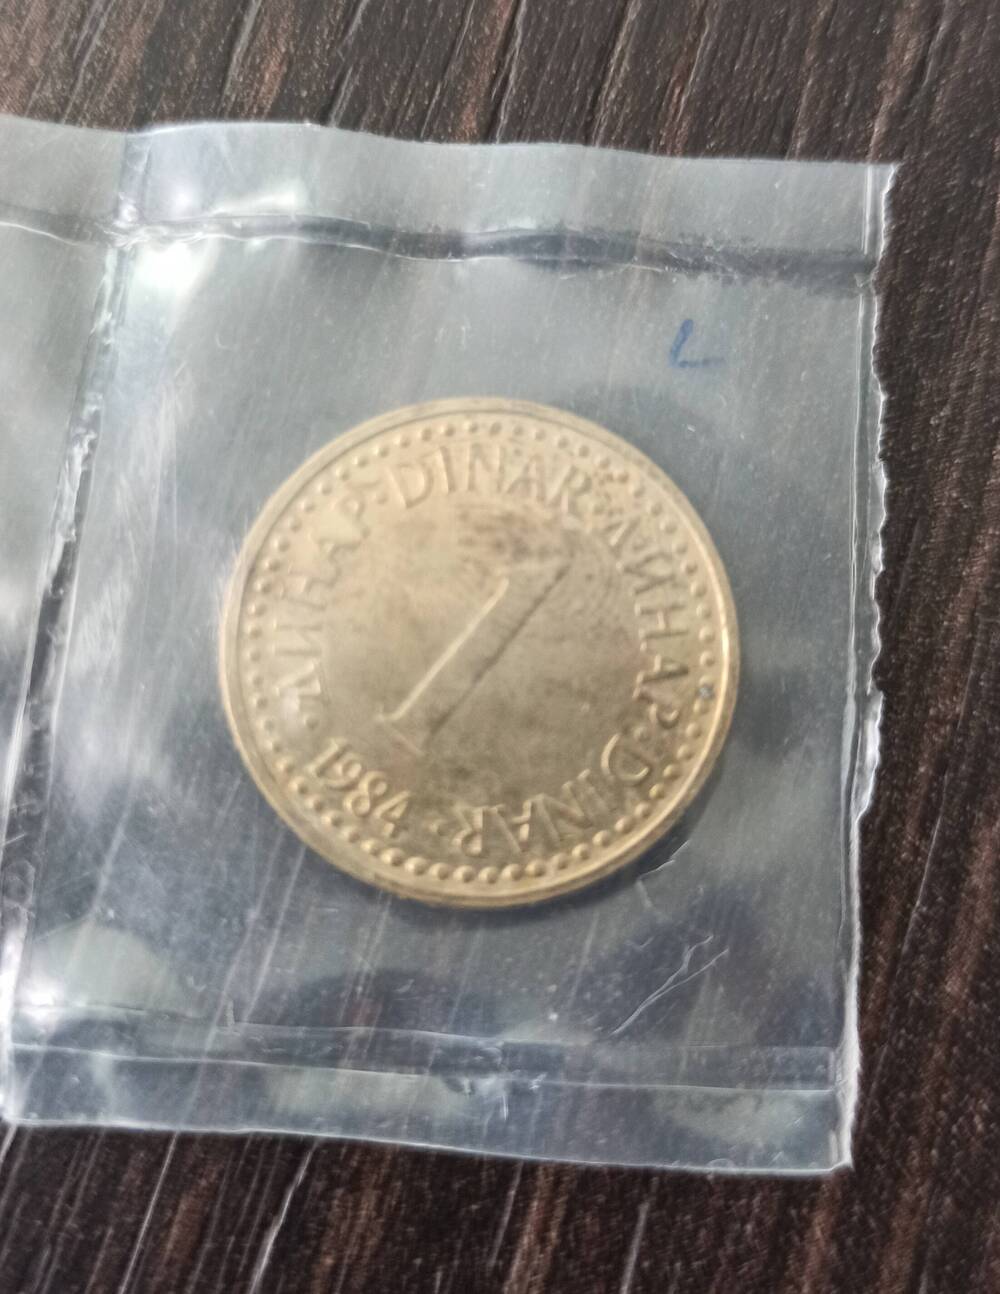 Нумизматика. Монета Югославии достоинством 1 динар 1984 года.